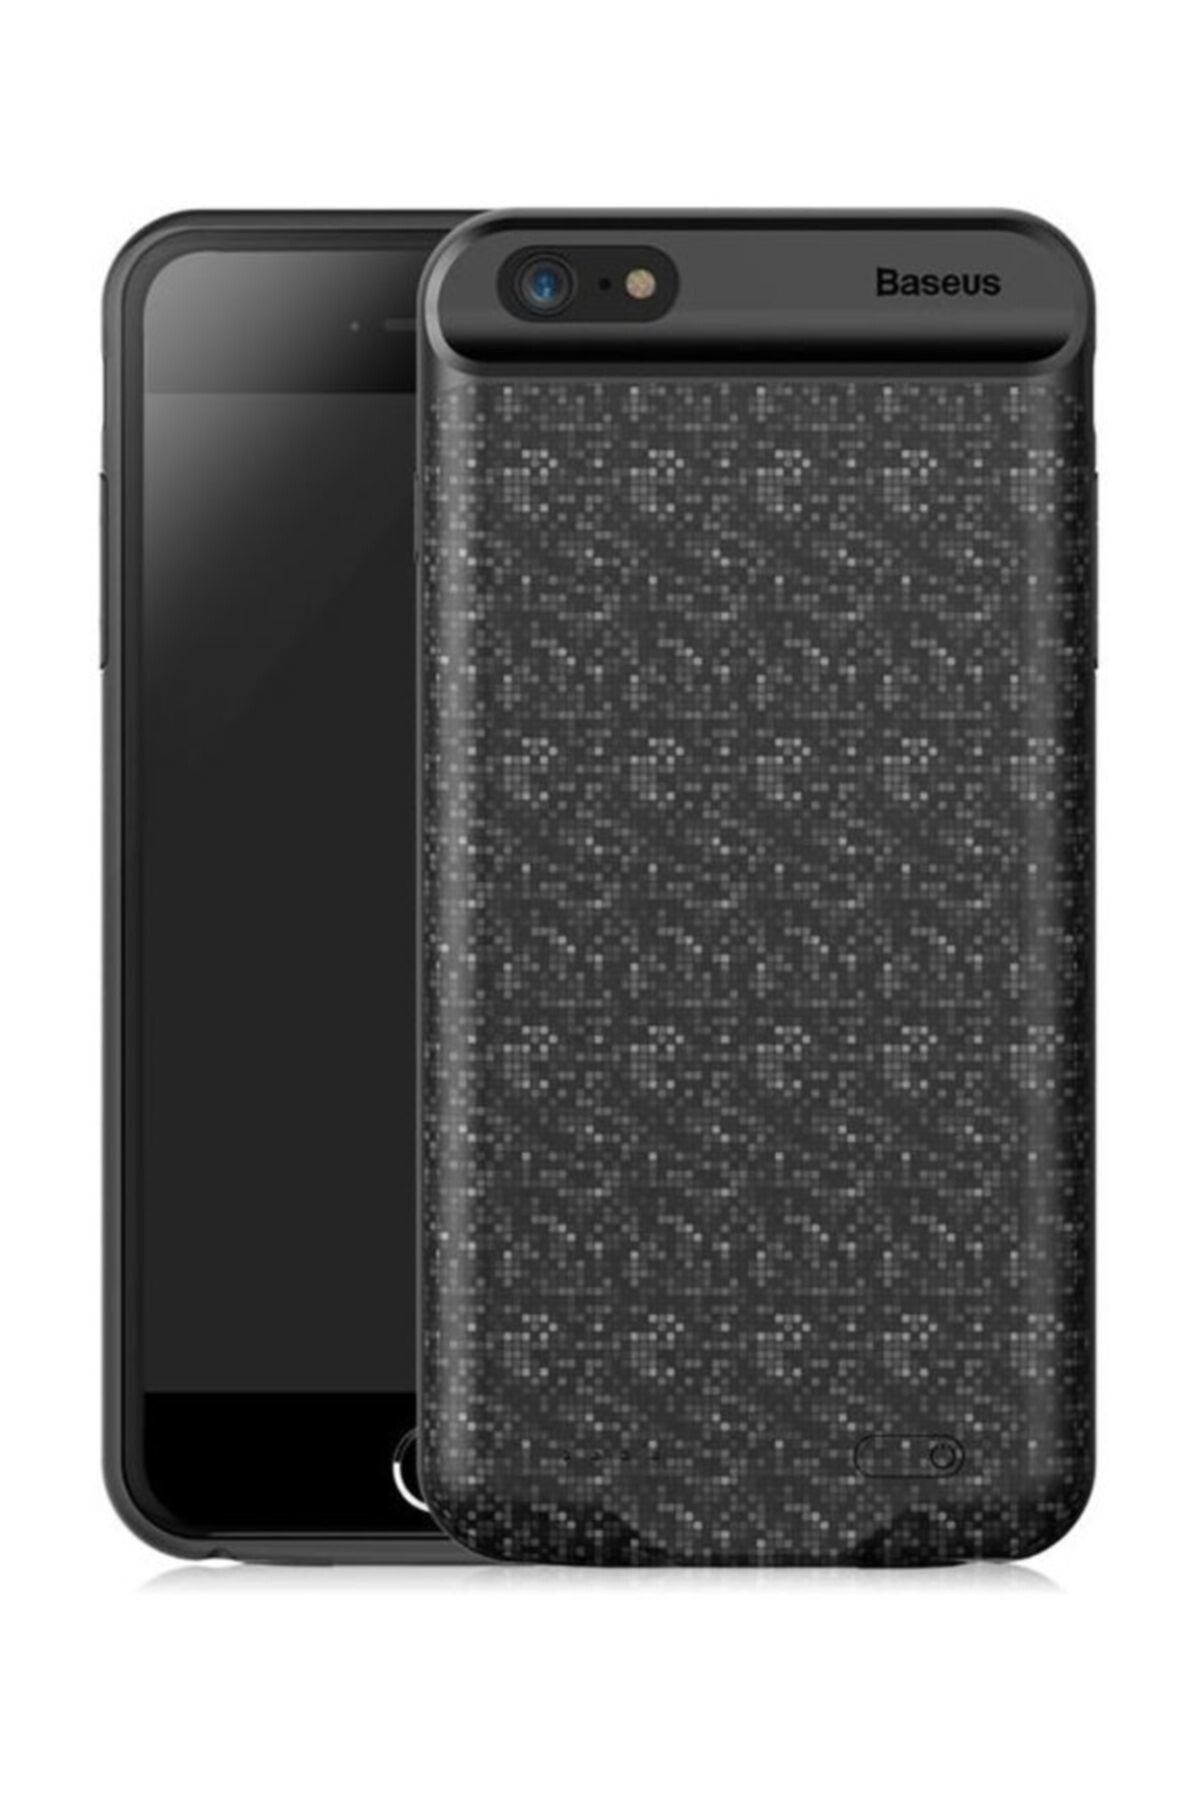 Baseus Plaid iPhone 6 6S Siyah Şarjlı Kılıf Arka Koruyucu Kapak 2500mAh